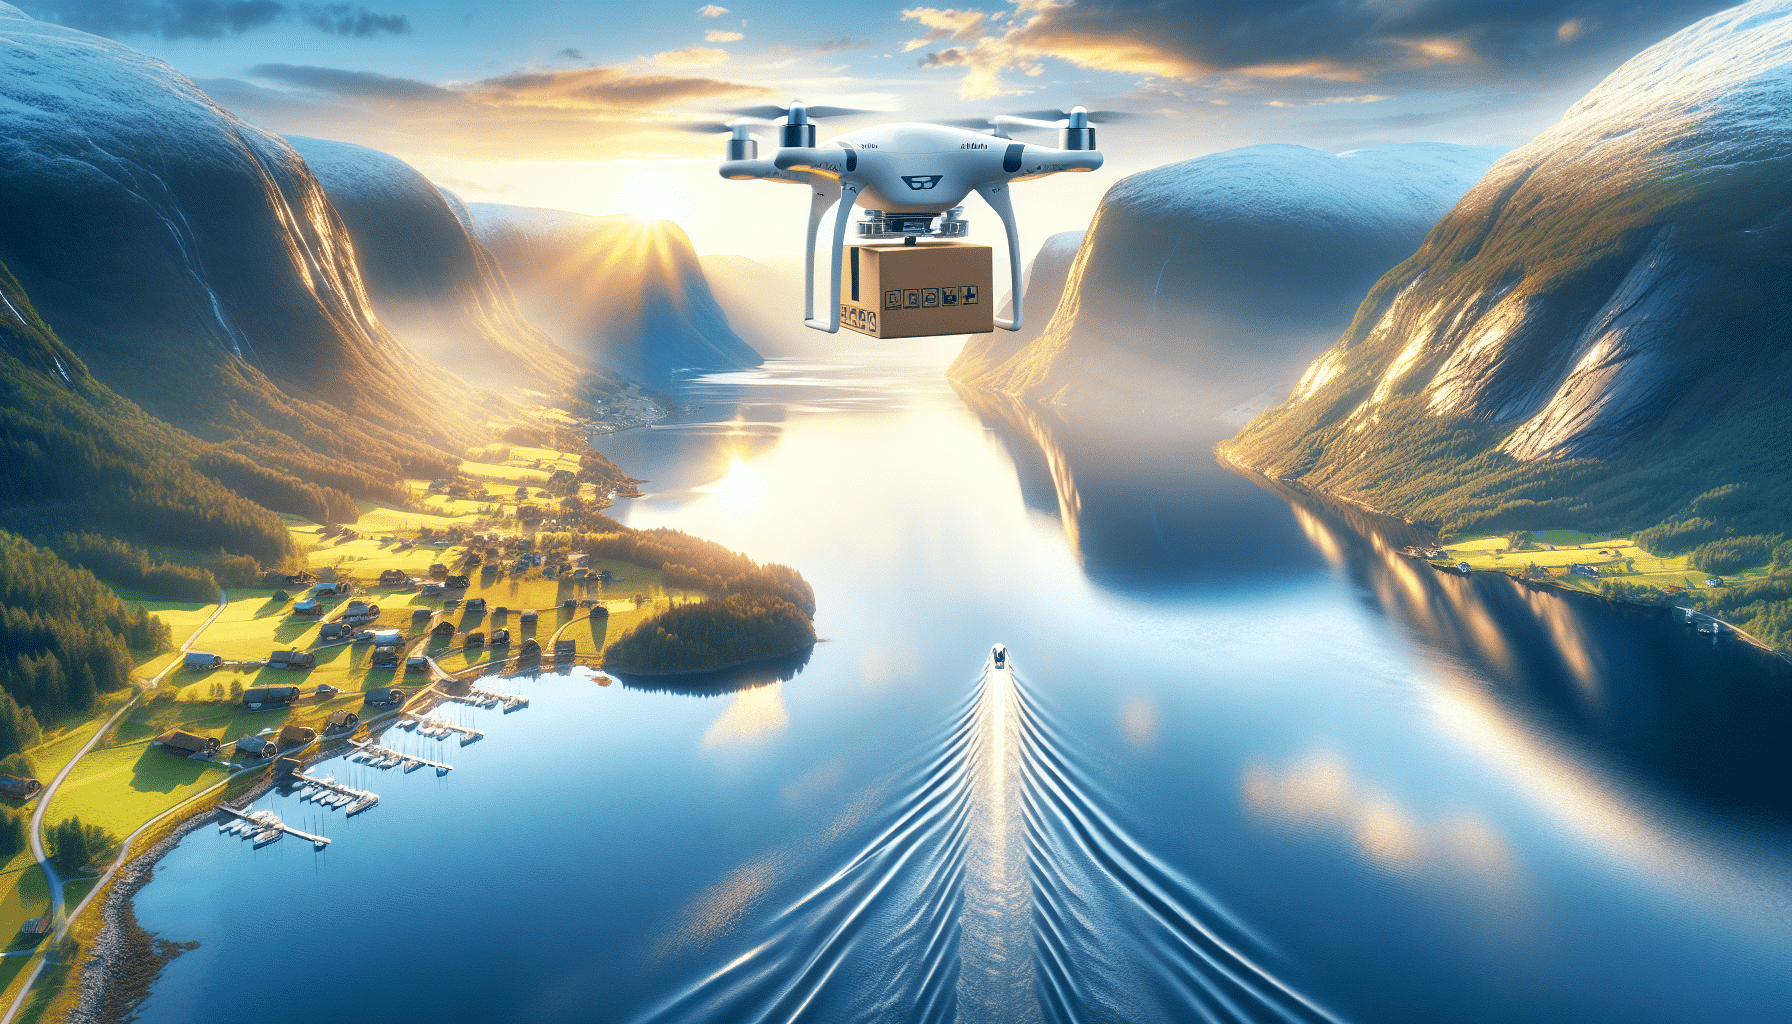 noruega estrena su servicio de entrega a domicilio con drones autónomos. descubre cómo la innovación llega a tu puerta con la última tecnología en entregas.